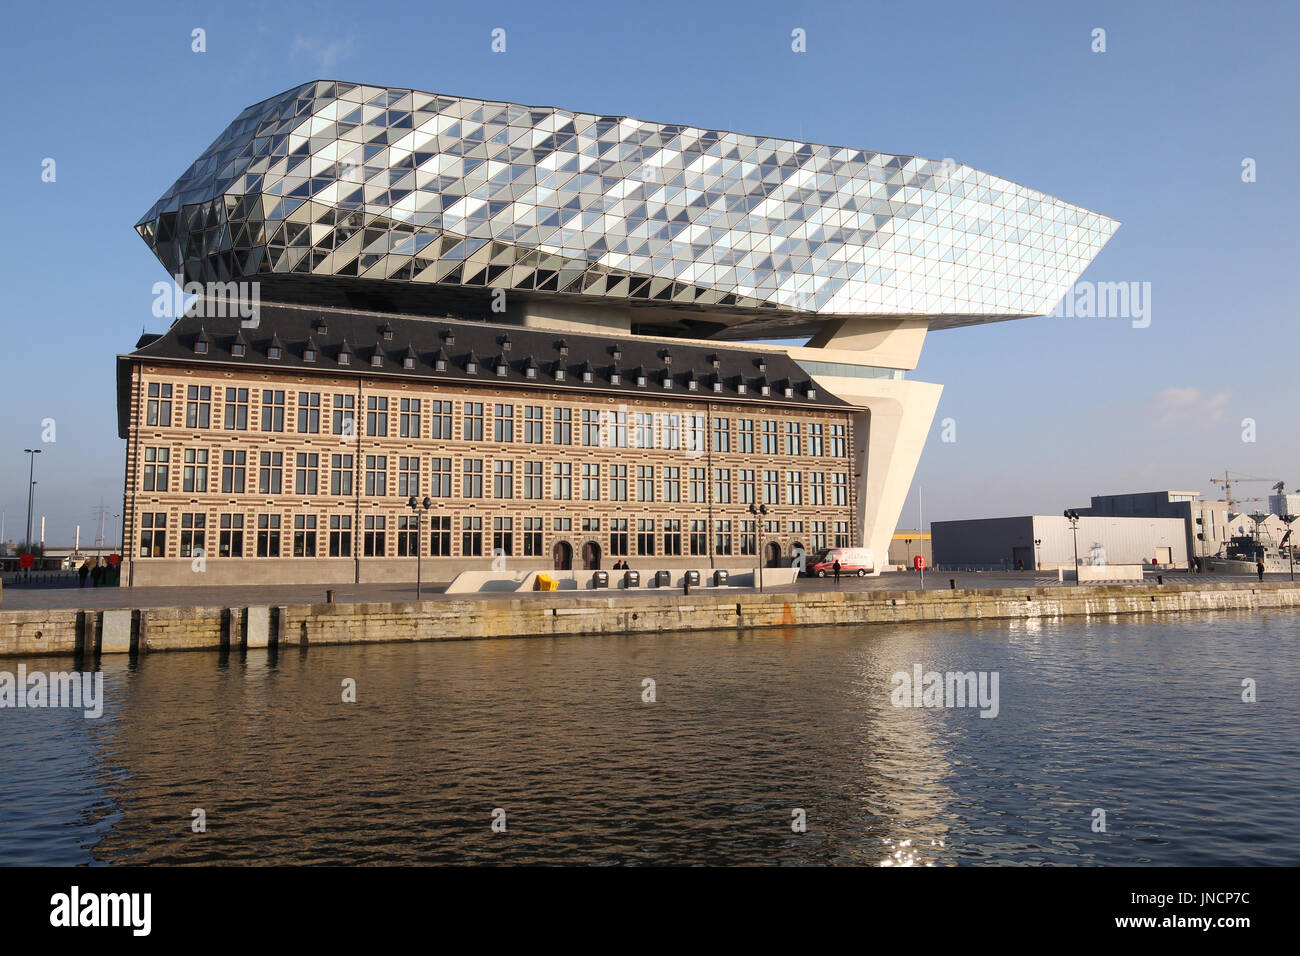 La porta House è la sede dell'Autorità portuale di Anversa. Esso si trova in Anversa, Fiandre, in Belgio. Foto Stock